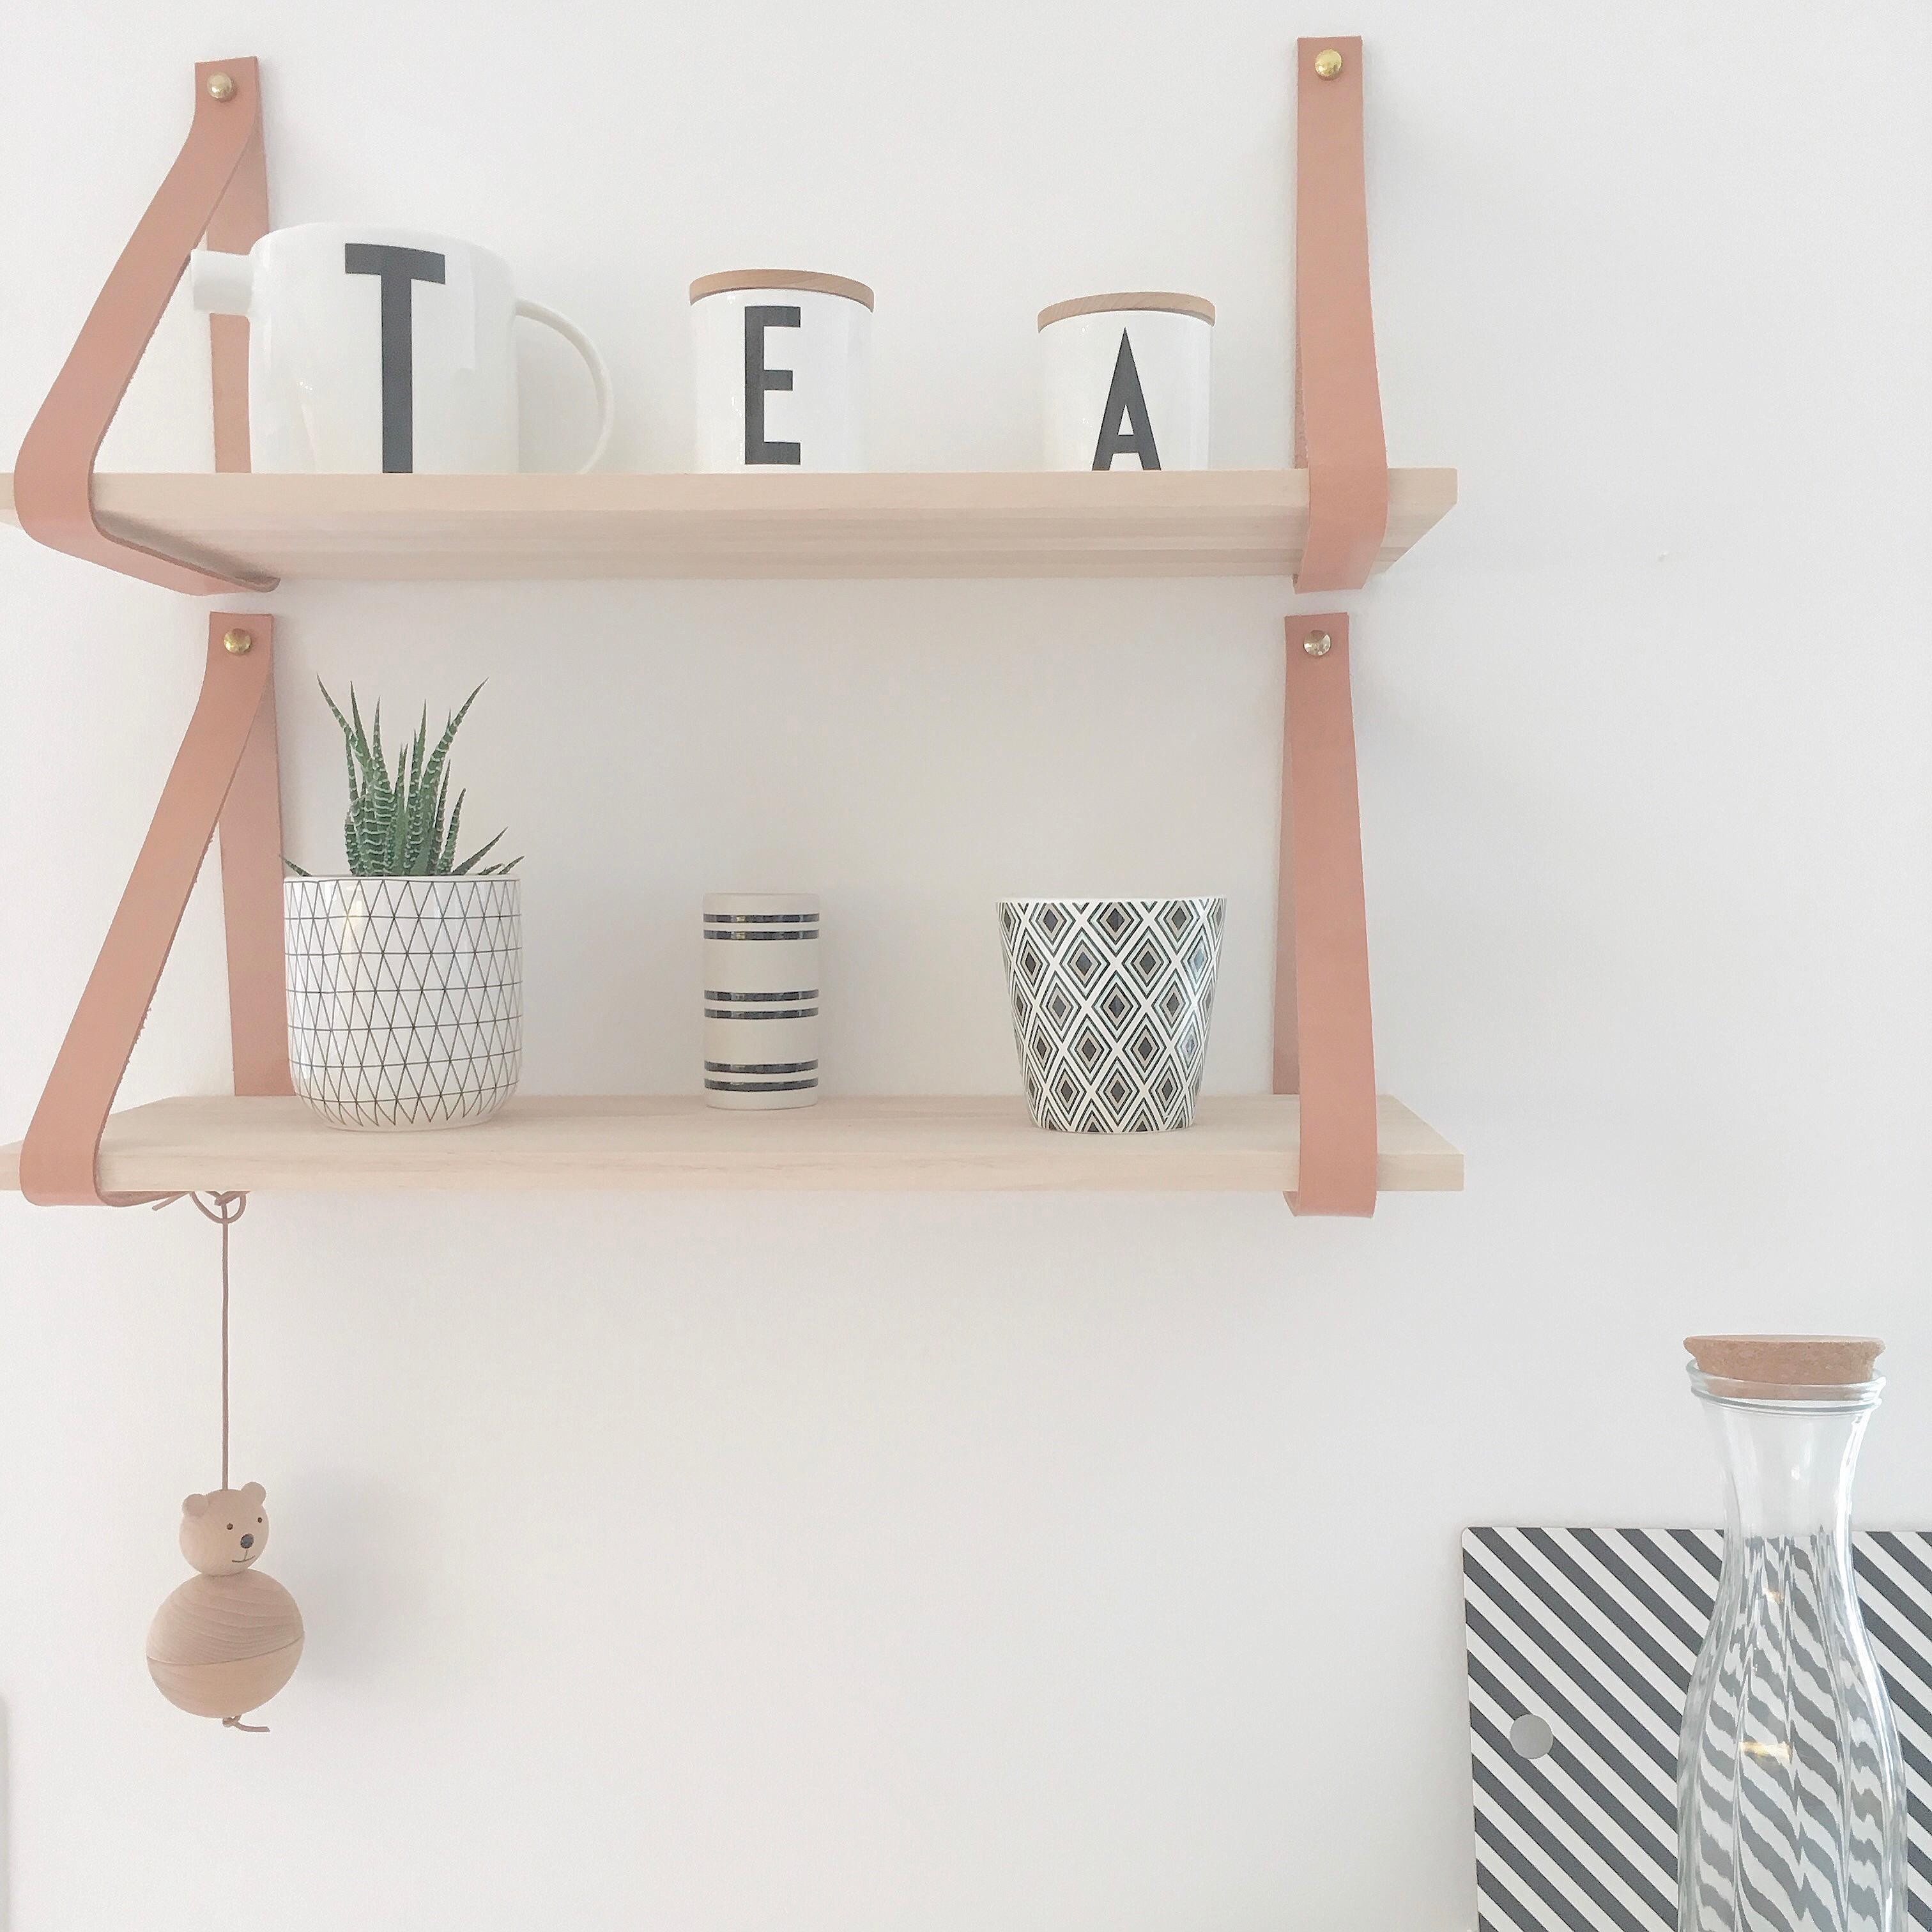 Küchenregal...... Teatime, Teekanne, Design Letters Becher, Regal mit Lederriemen #küchenregal ©Monti66